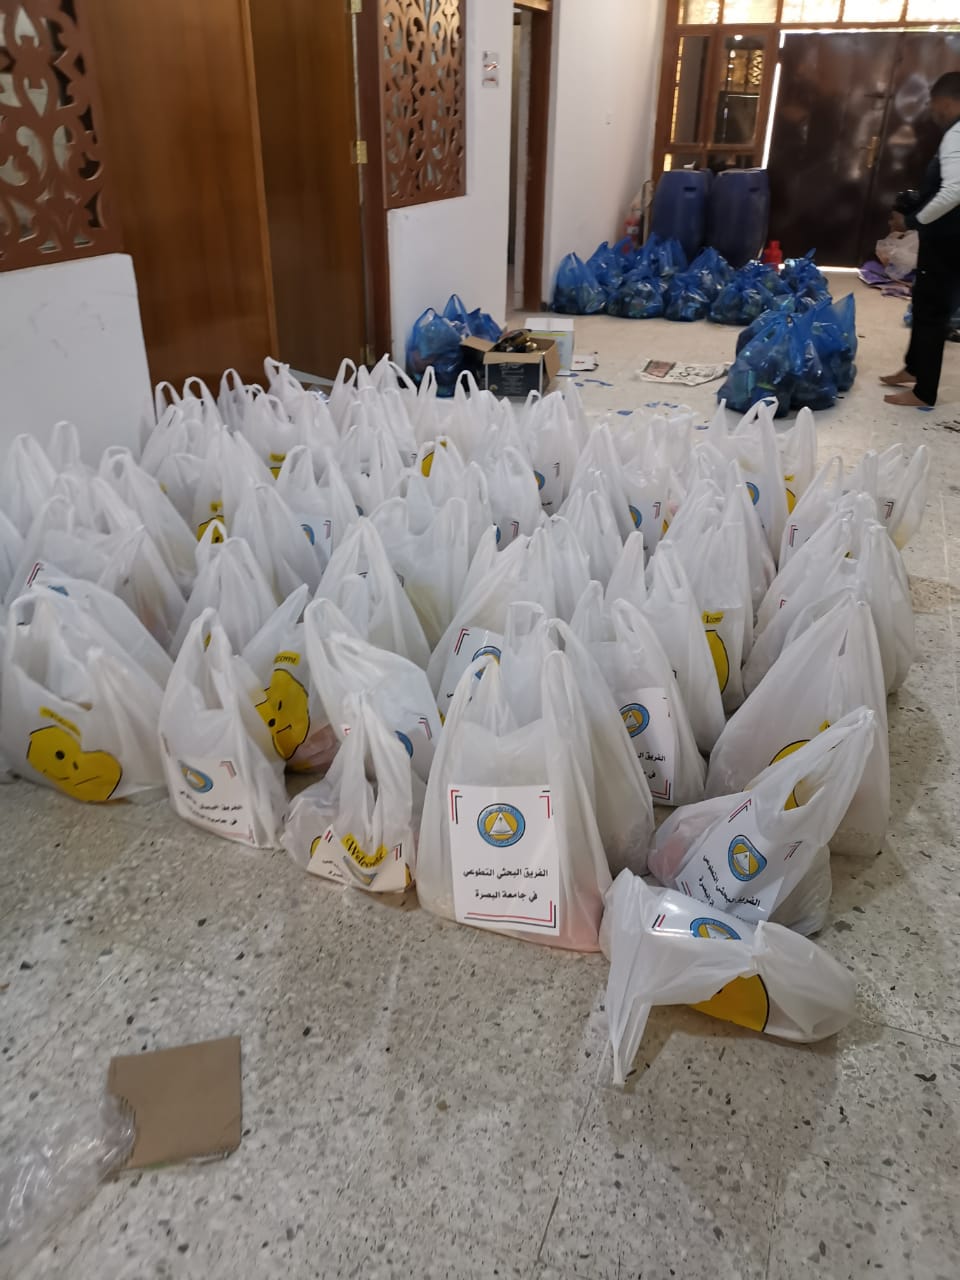 الفريق البحثي التطوعي في جامعة البصرة يقدم ١٠٠ سلة غذائية للعوائل المتعففة تزامنا مع حلول شهر رمضان المبارك